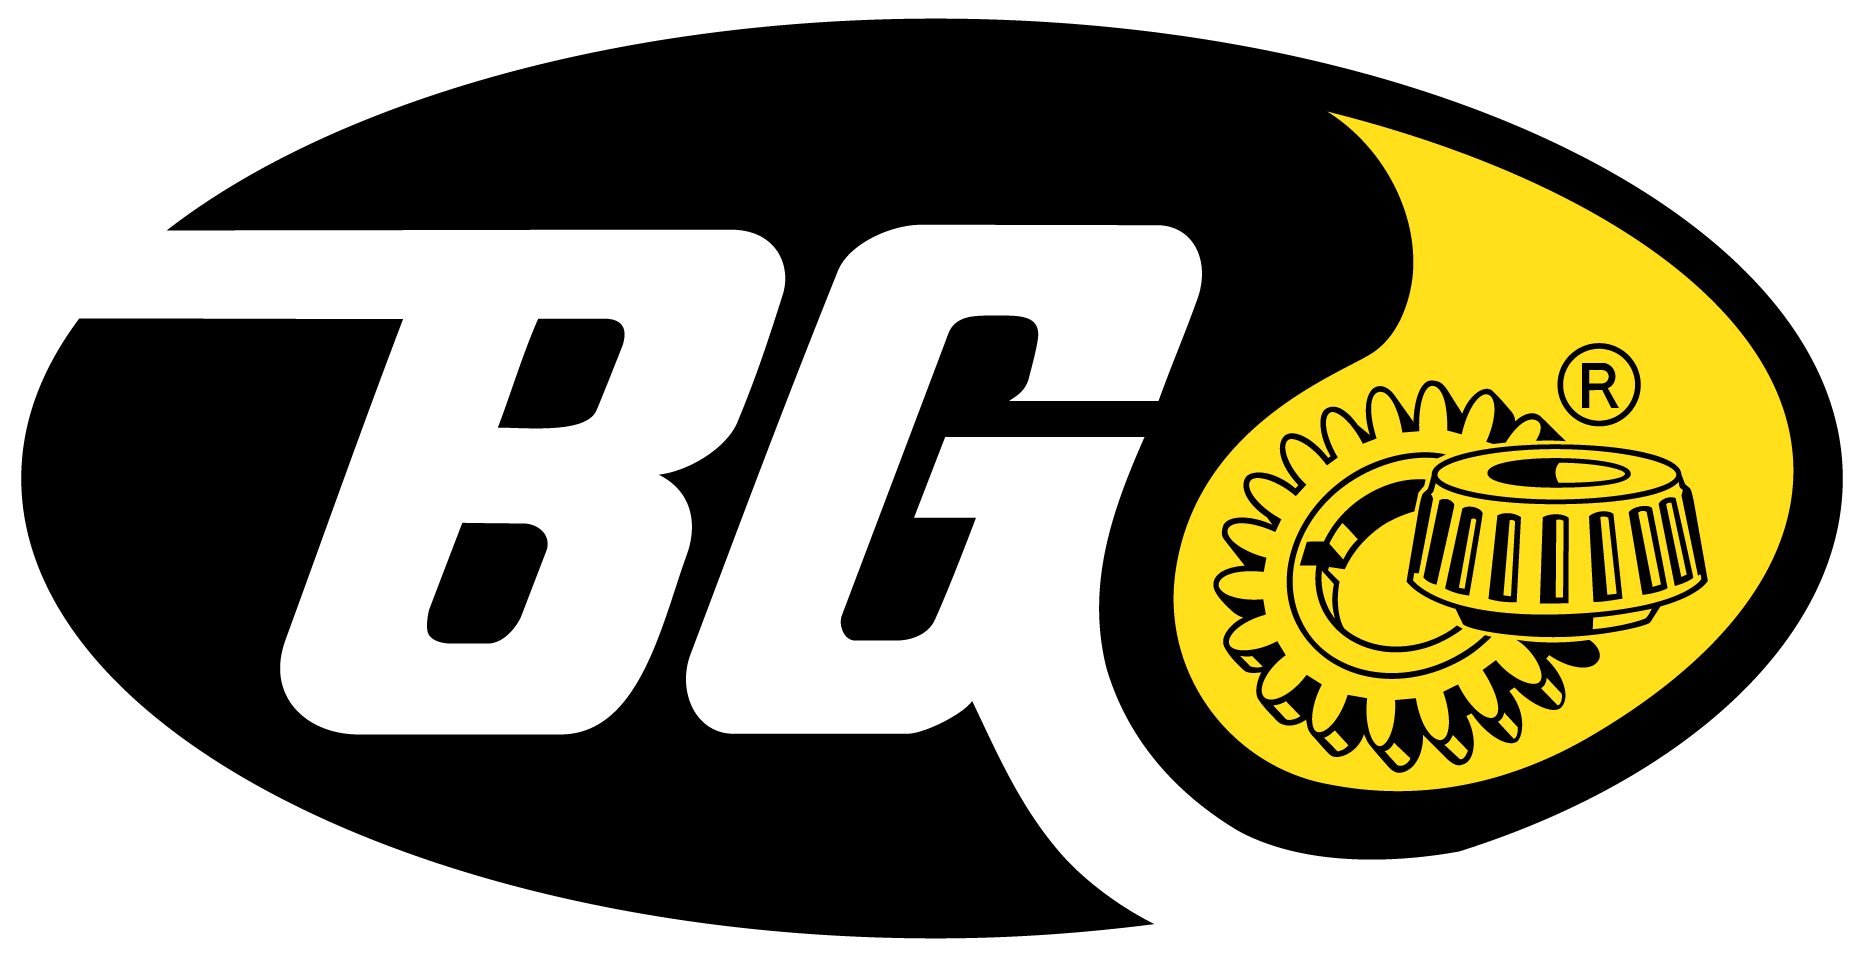 BG Service Center